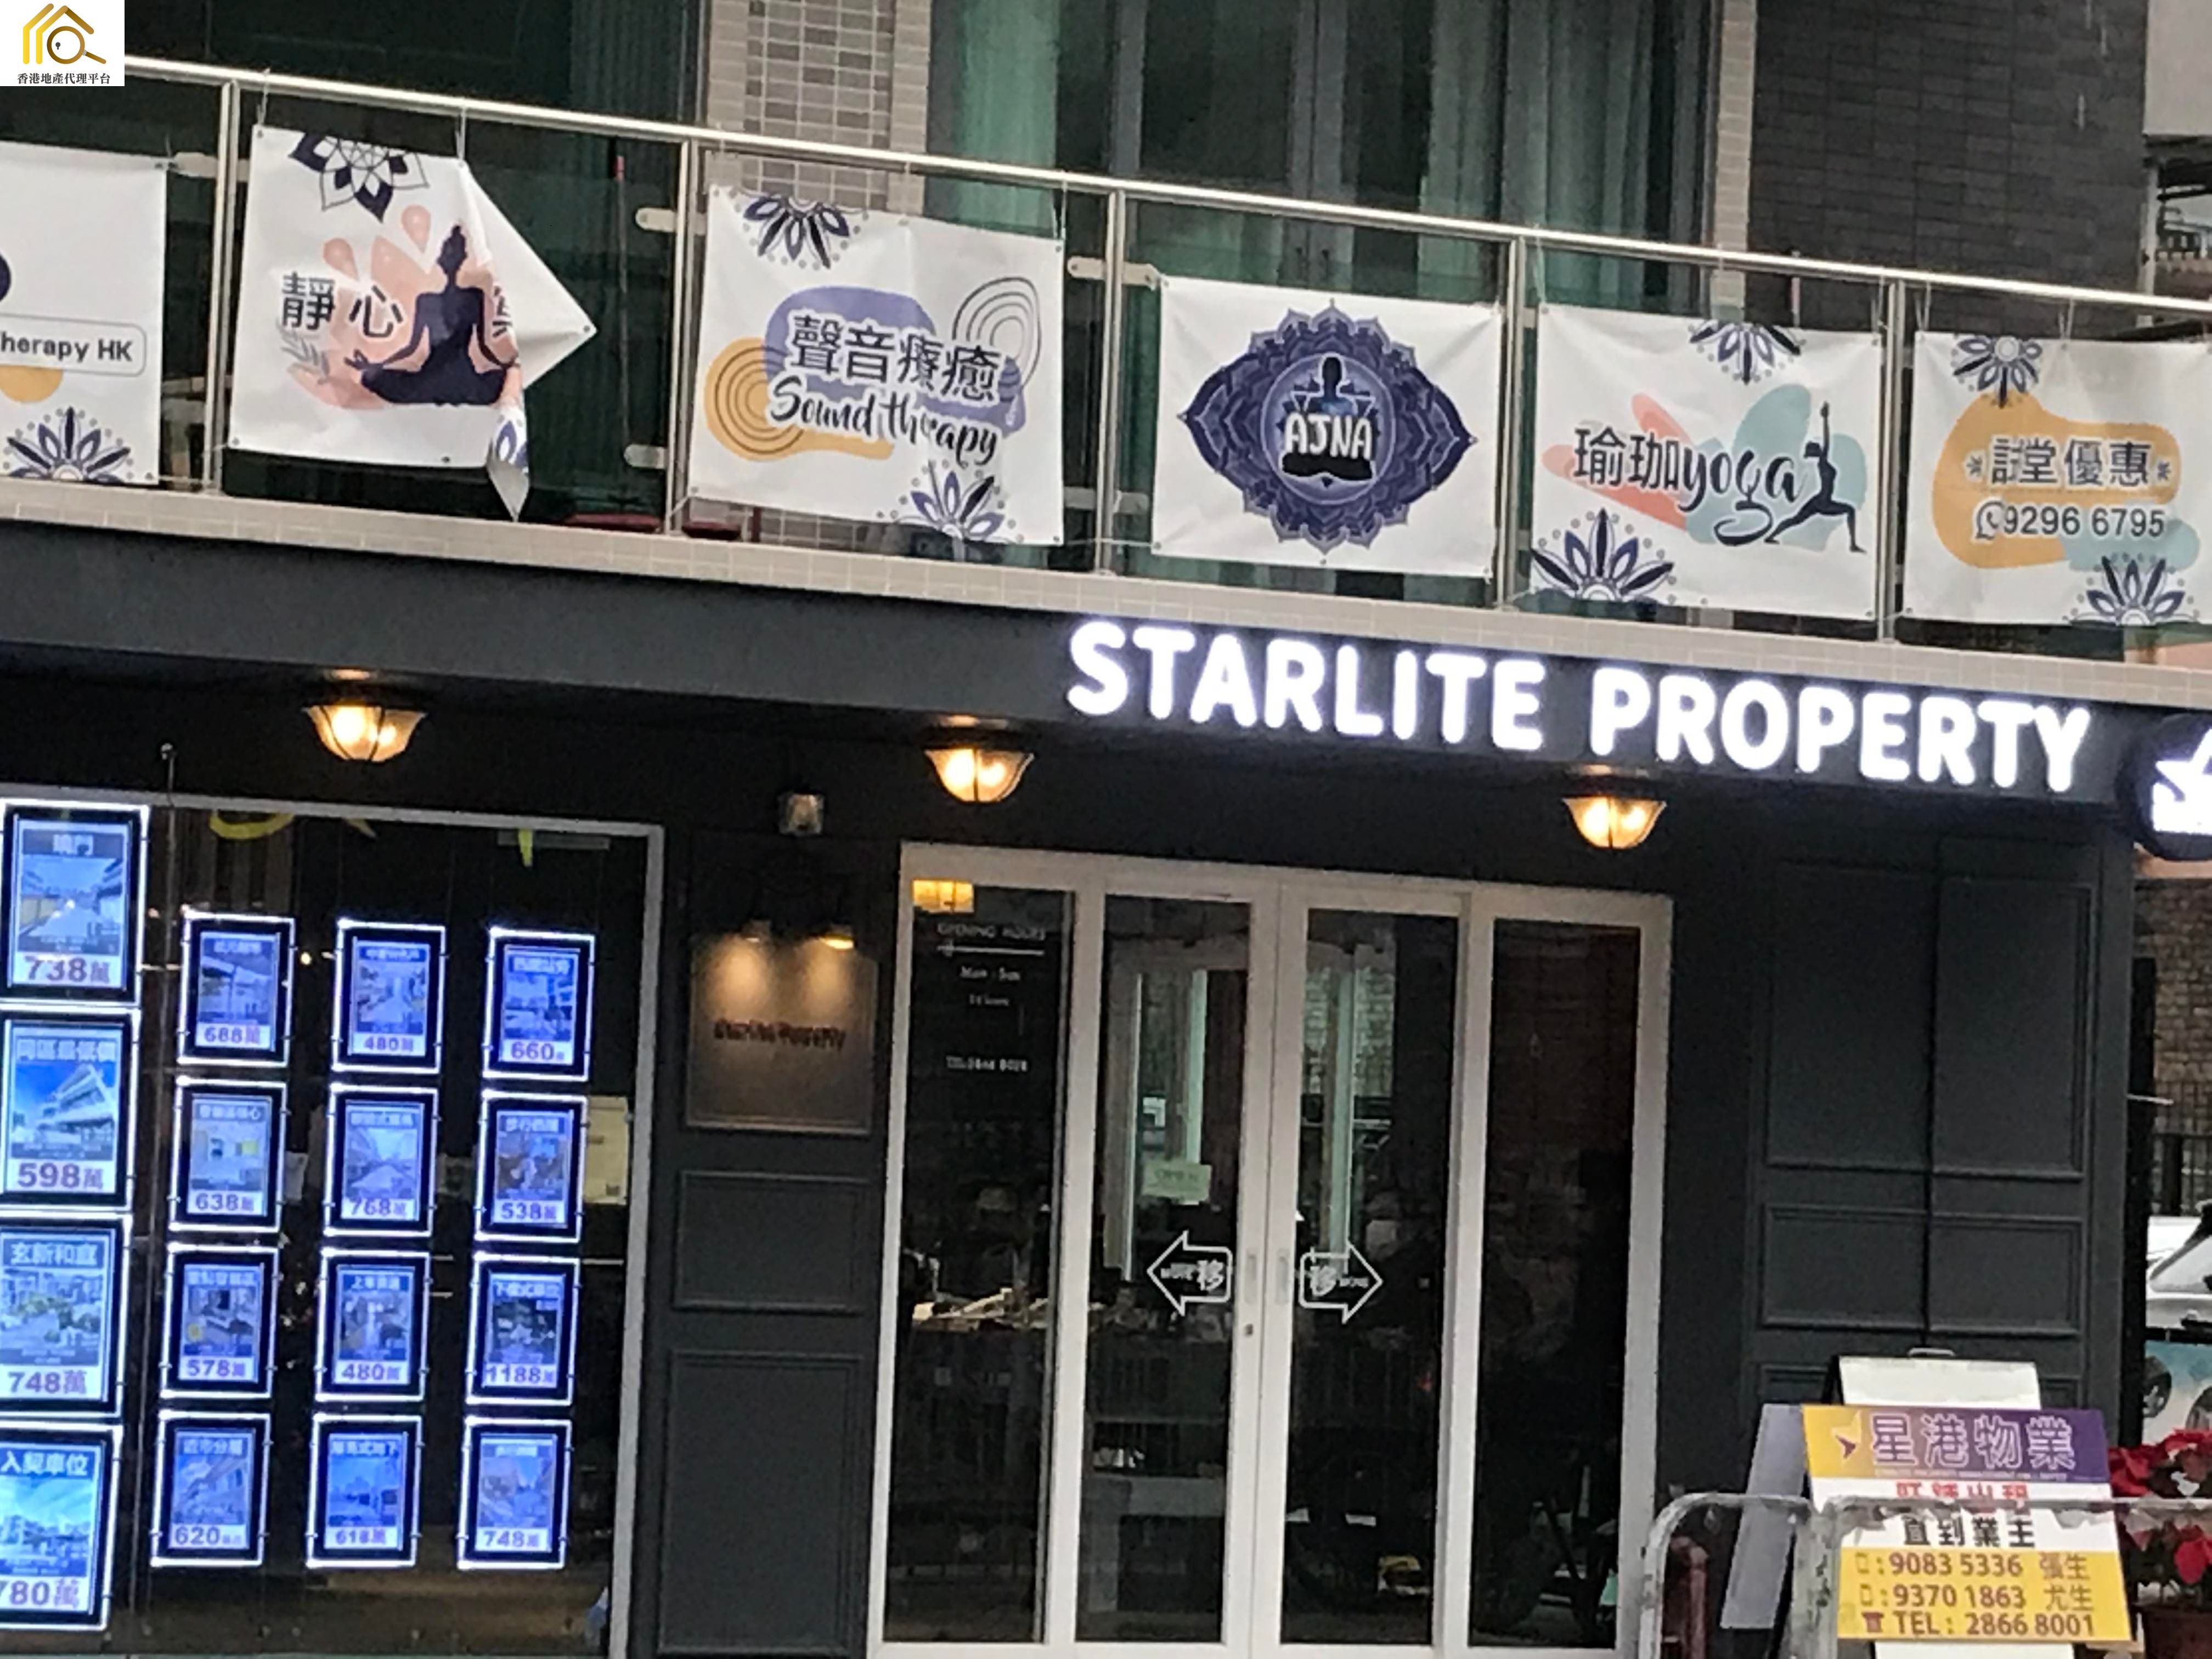 村屋地產代理: 星港物業 Starlite Property